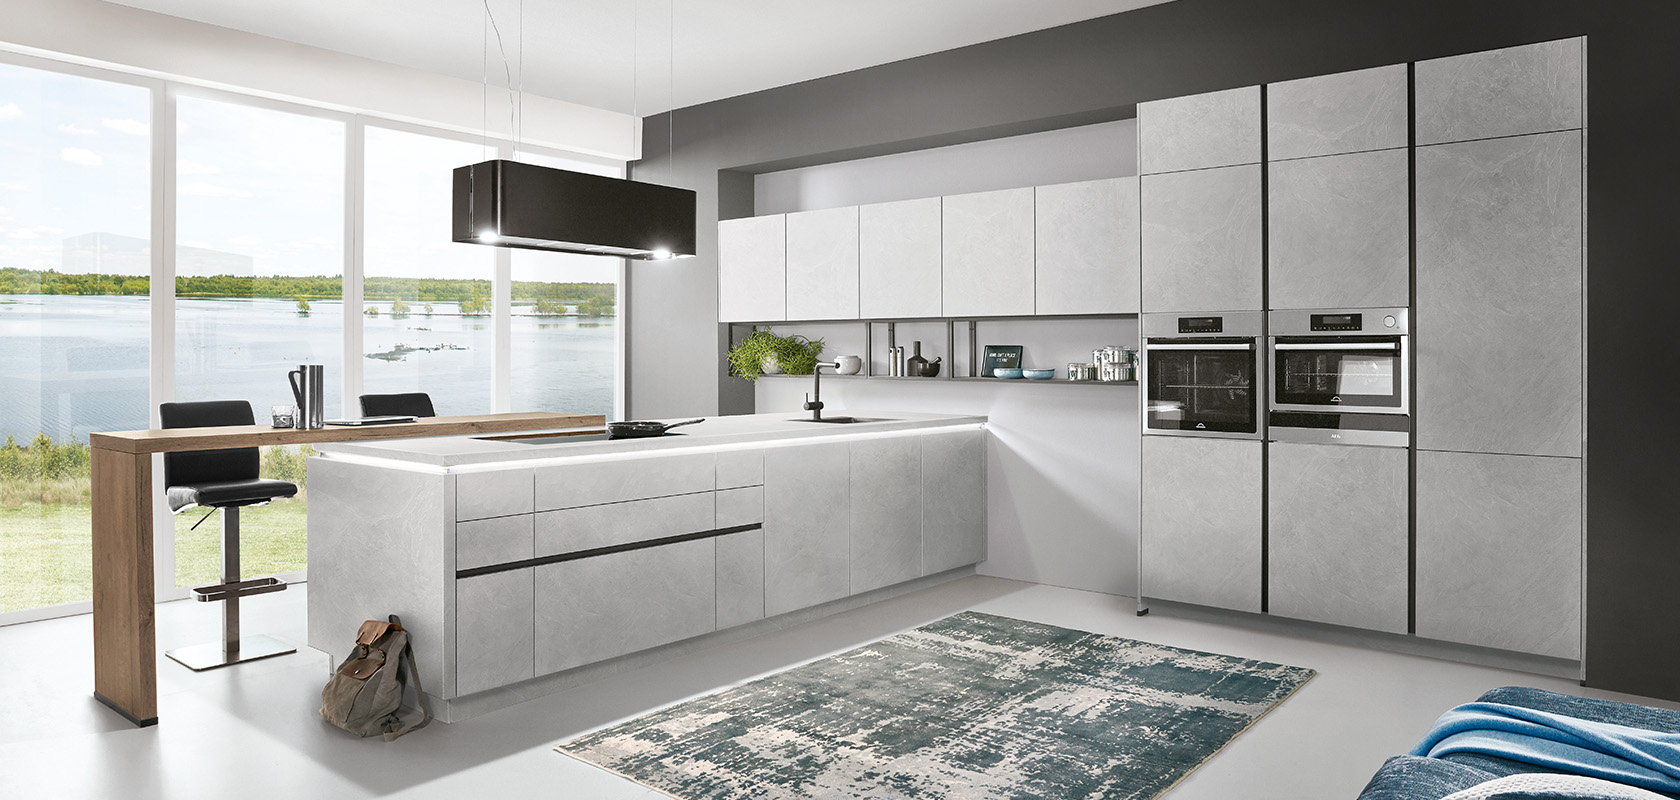 Interior de cocina moderna con elegantes gabinetes grises, electrodomésticos integrados y una isla espaciosa con vista a un lago sereno a través de grandes ventanas.